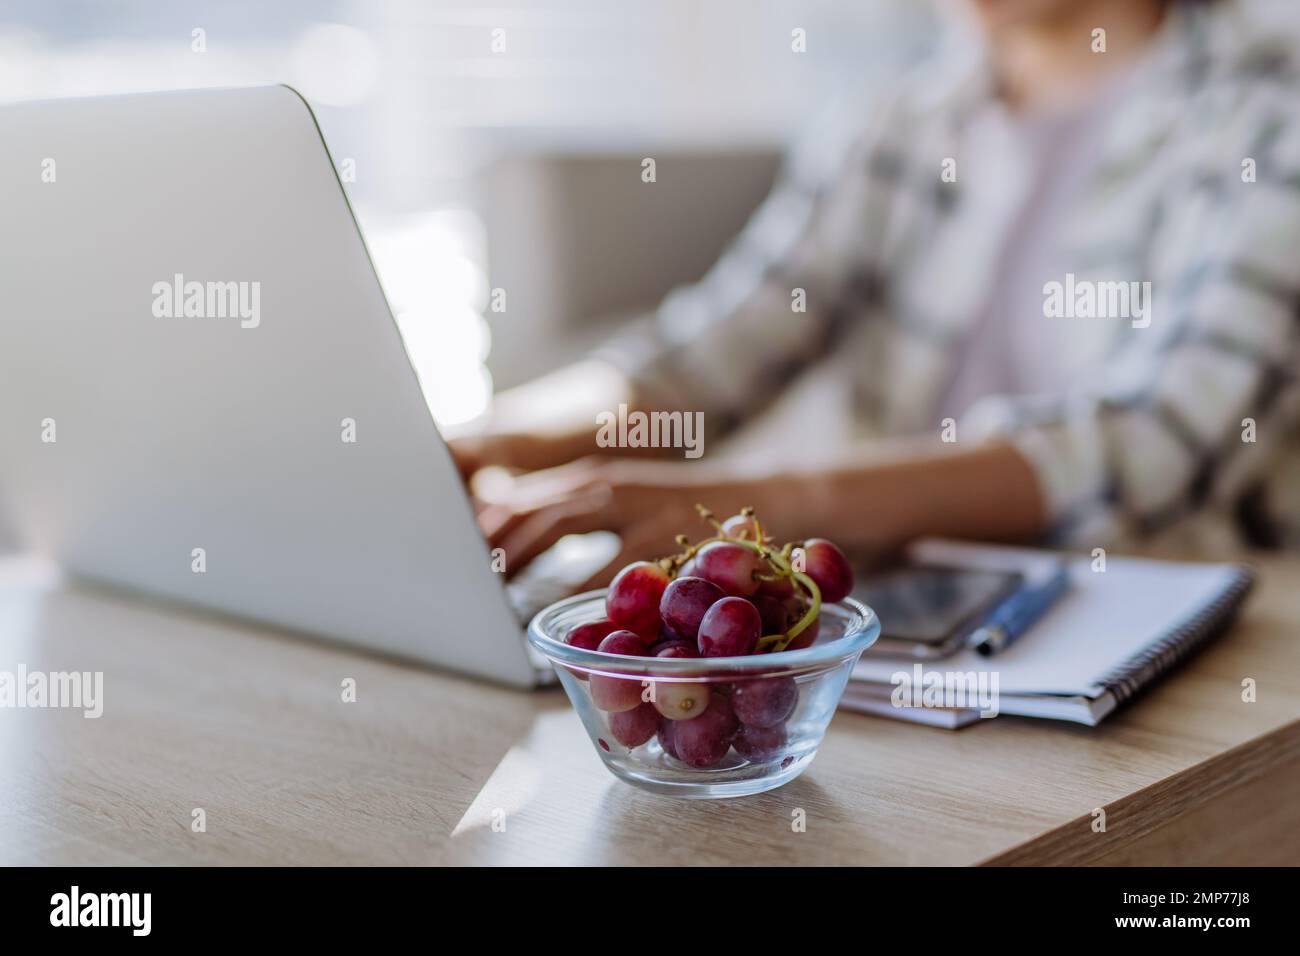 Seitenansicht einer Frau, die eine Schüssel mit Trauben über dem Schreibtisch hält, mit Computer, Tagebuch und Smartphone. Konzept der Work-Life-Balance. Stockfoto